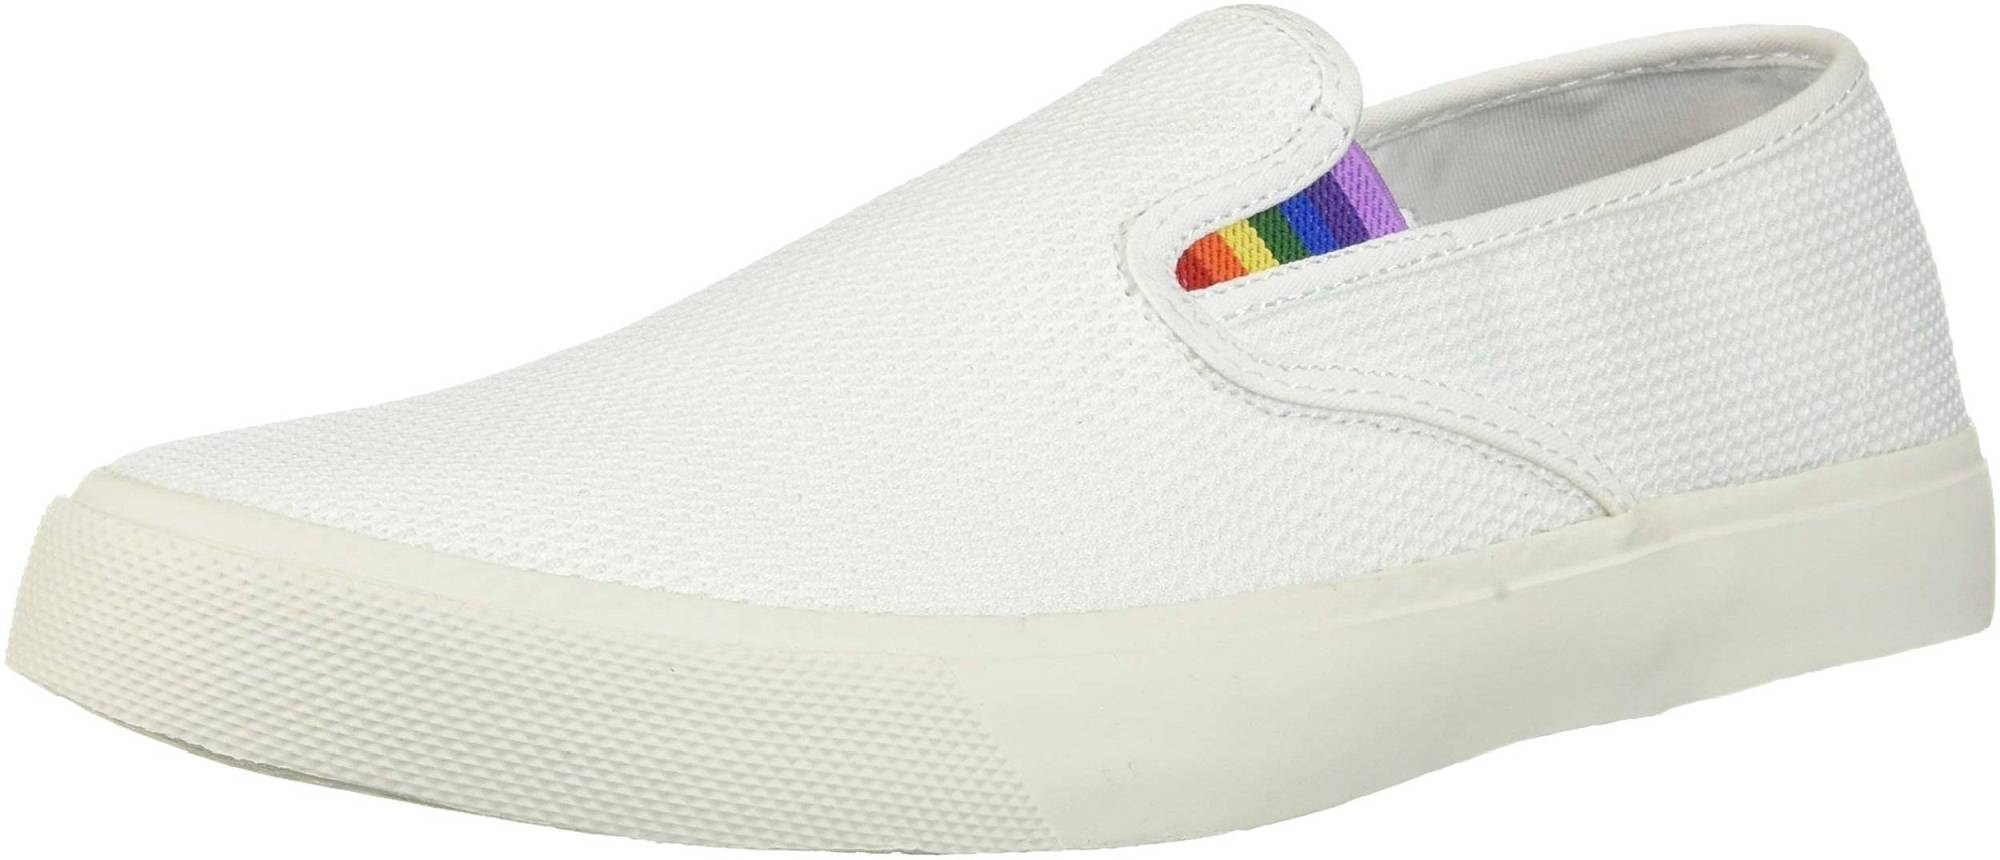 Captain's Slip On Pride Sneaker color